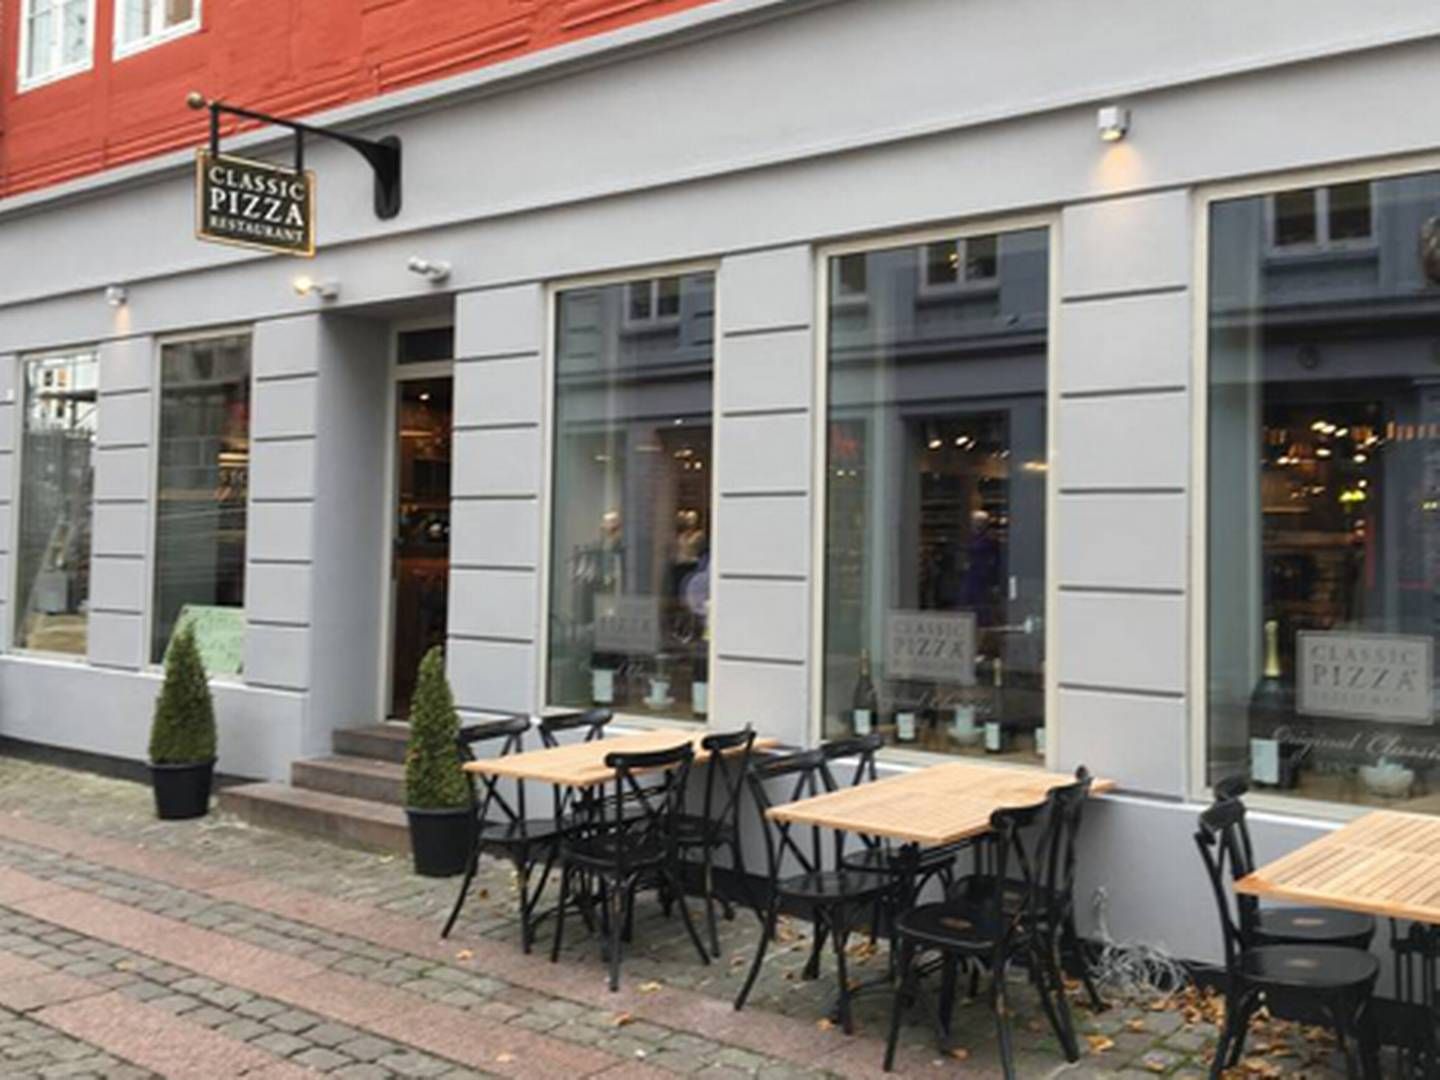 Classic Pizza er åbnet i Jacob BarBQ's tidligere lokaler i Aarhus ved siden af Magasin. | Foto: Mick Kristensen/Jyllands-Posten